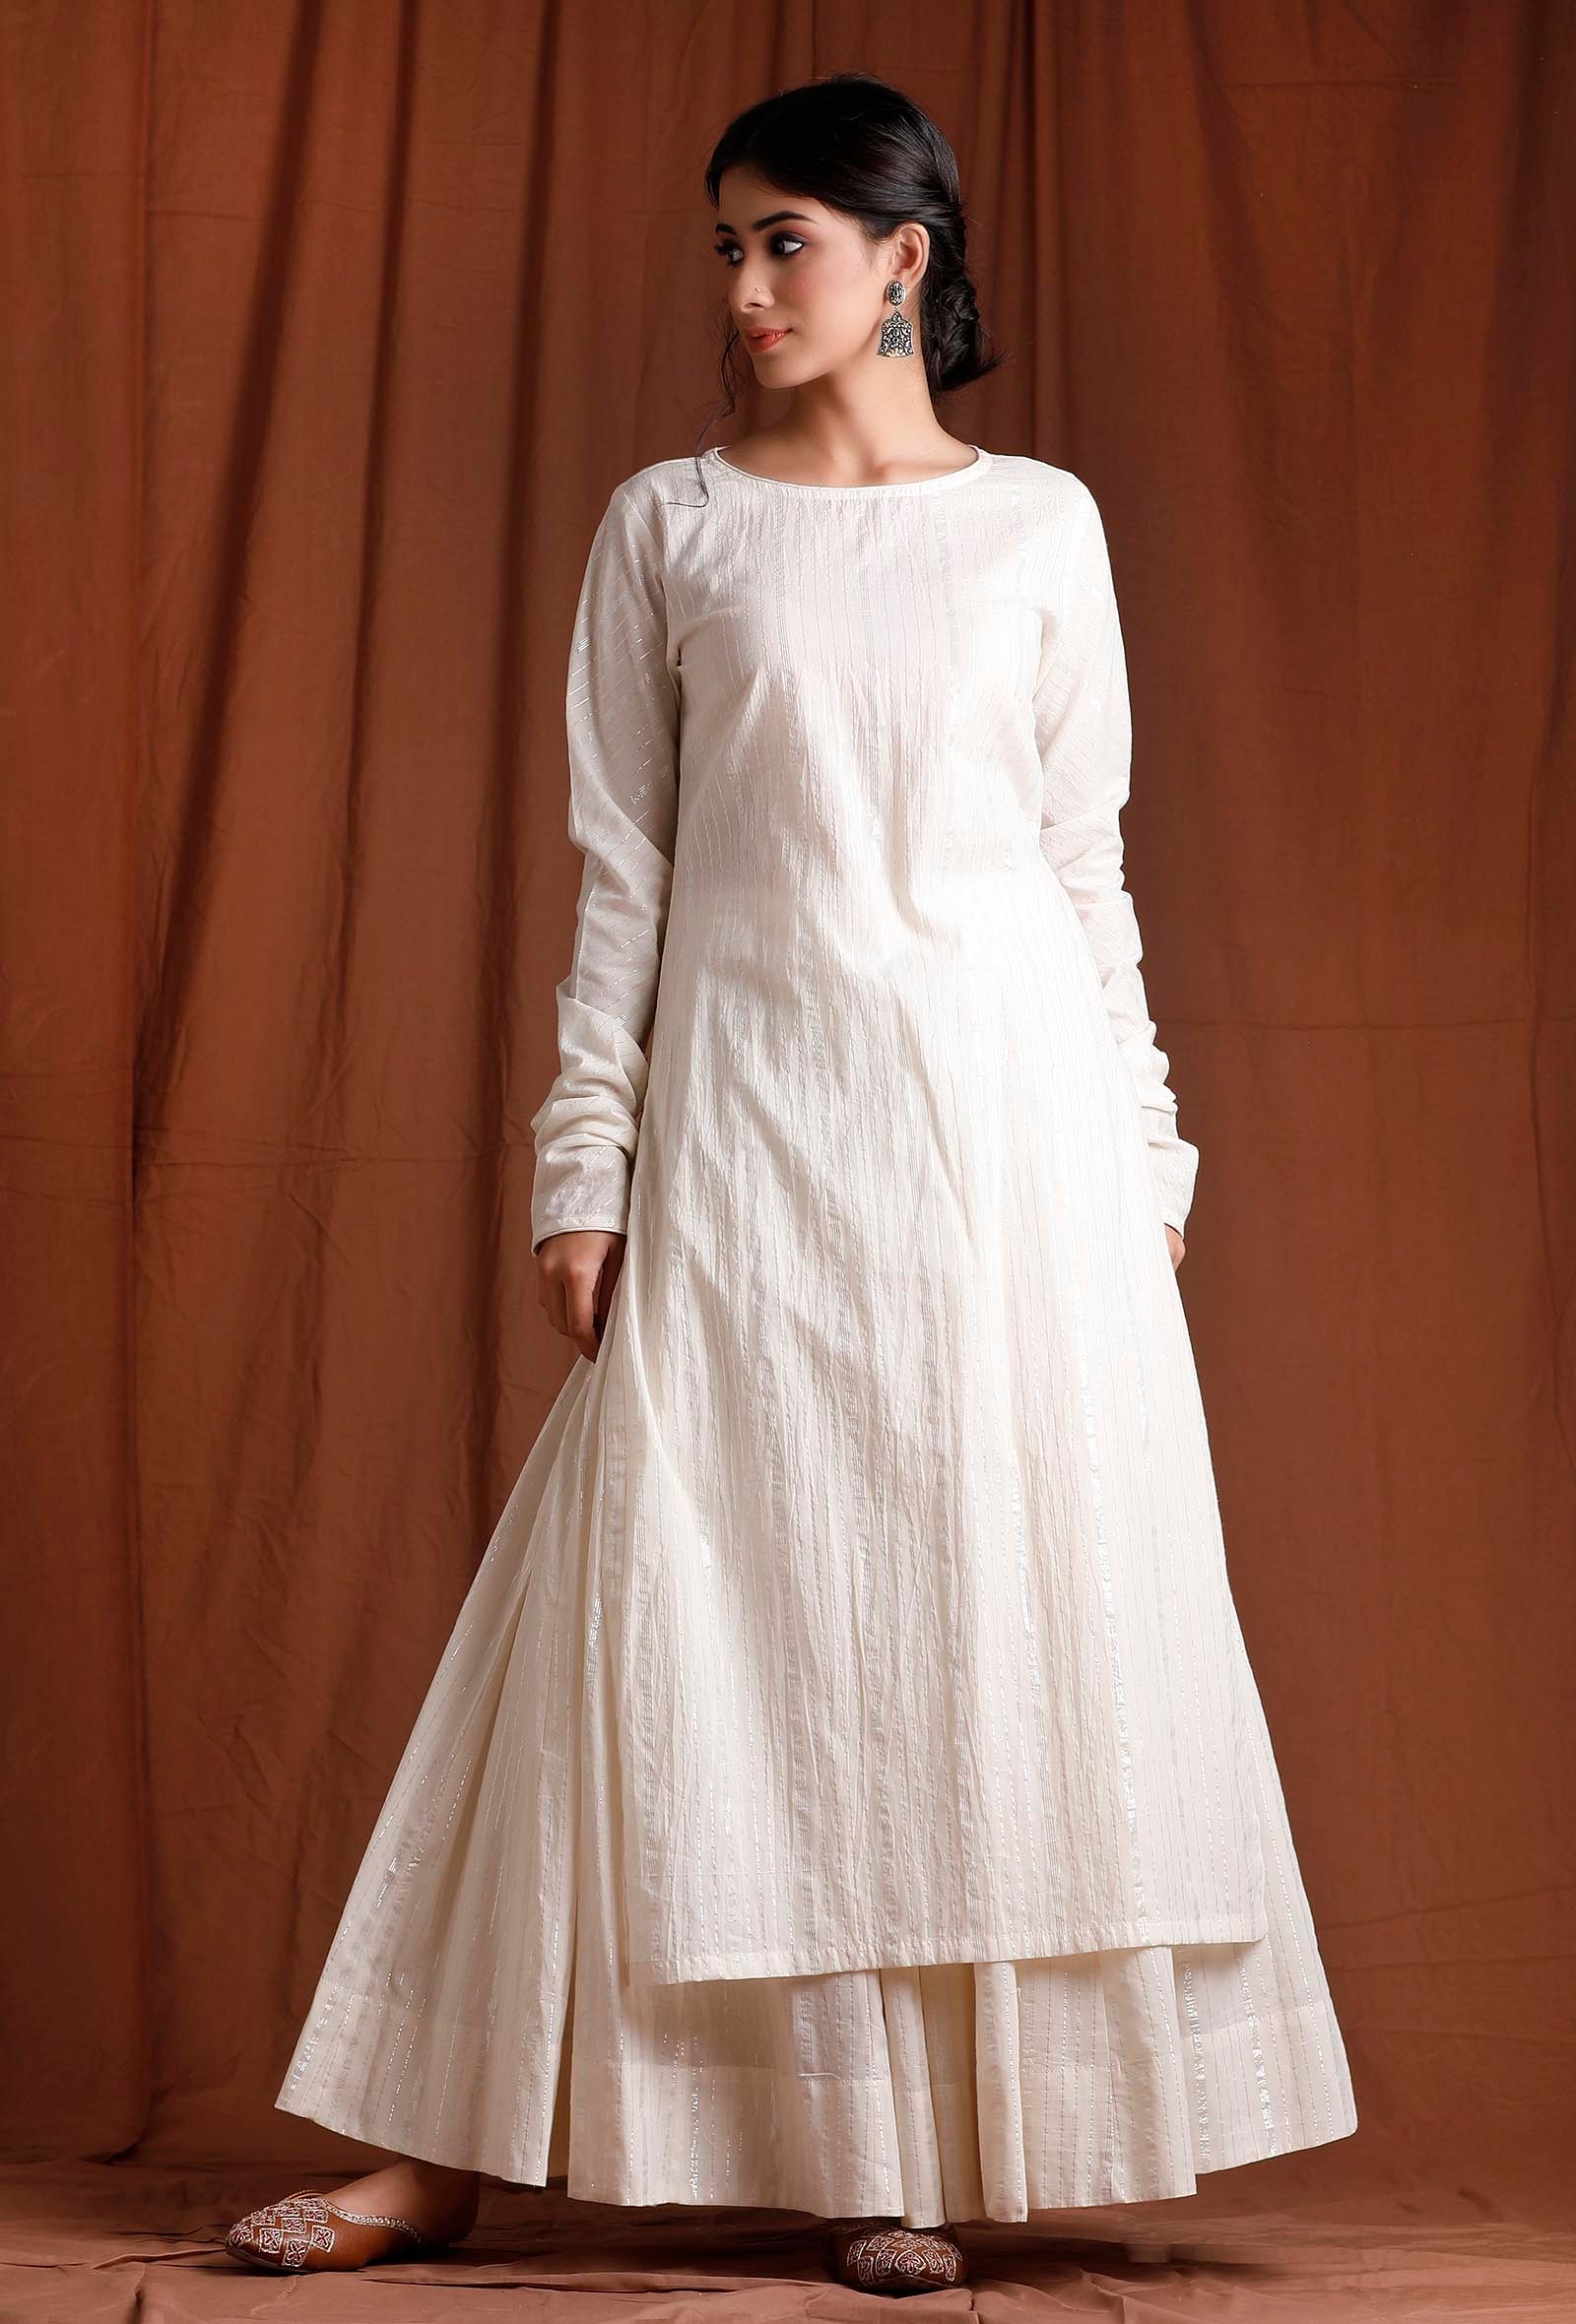 Buy Off White Cotton Full Sleeves Long Kurta Online @